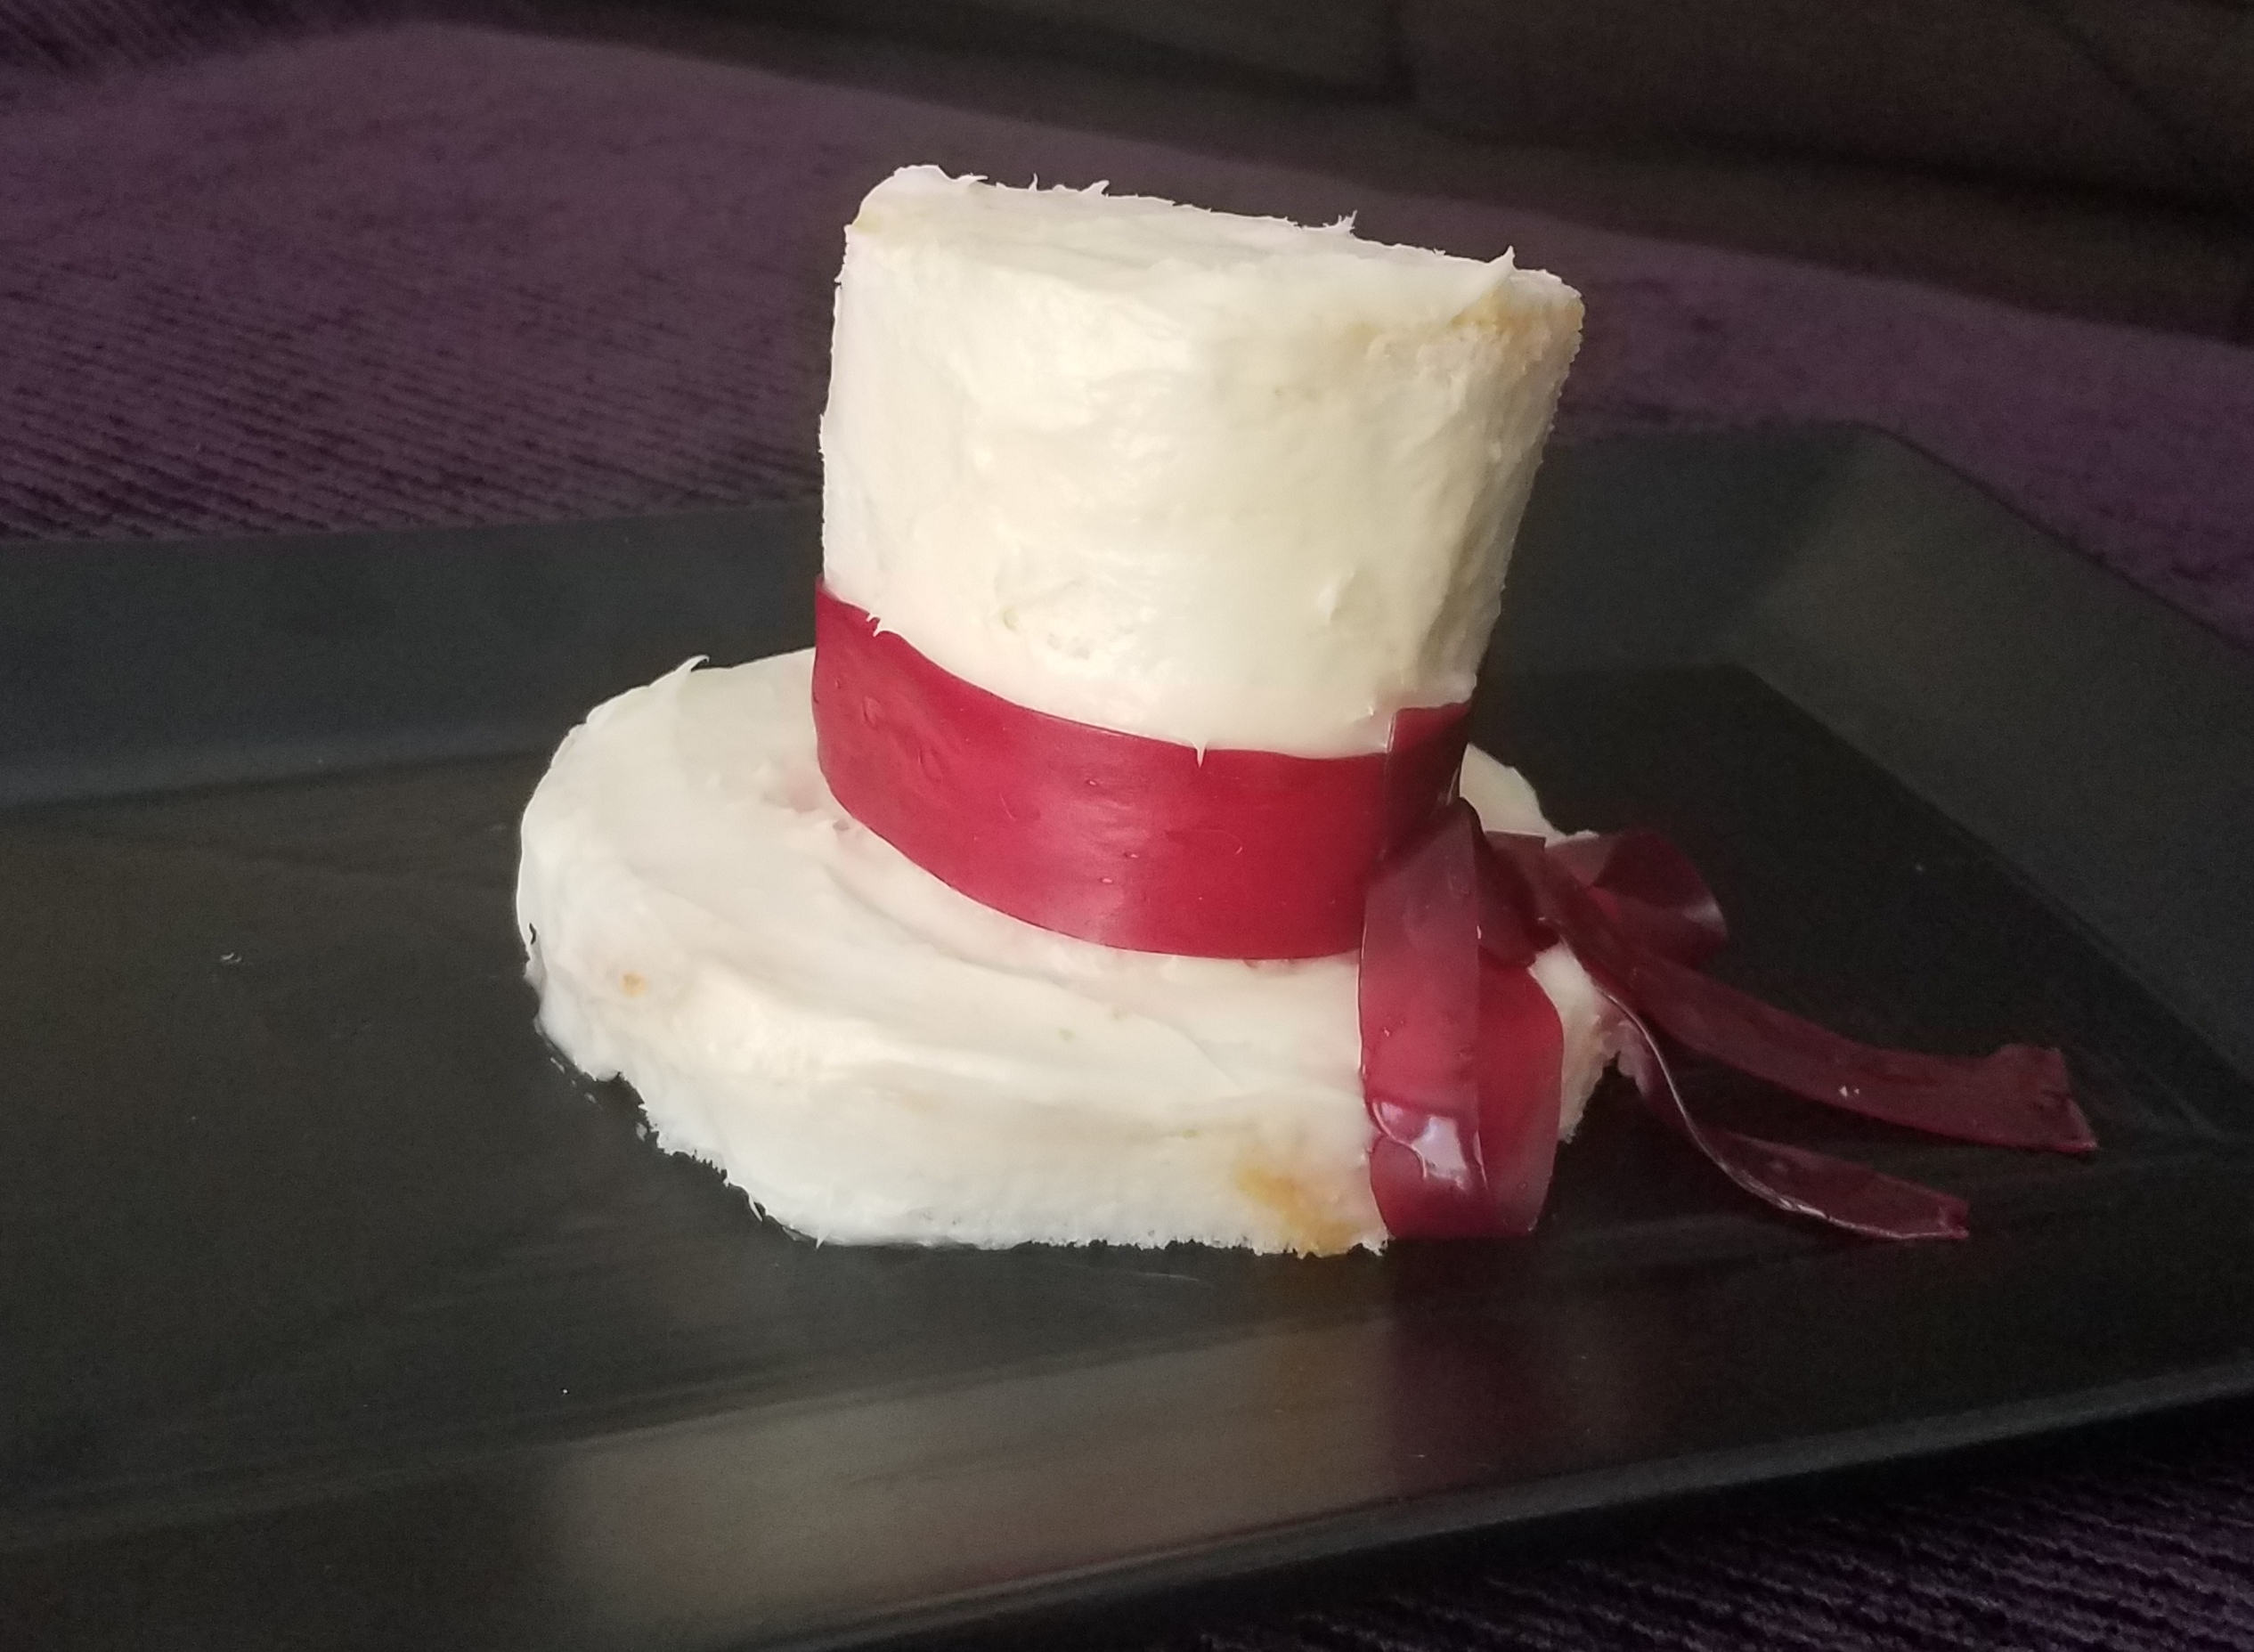 Small cake shaped like a hat